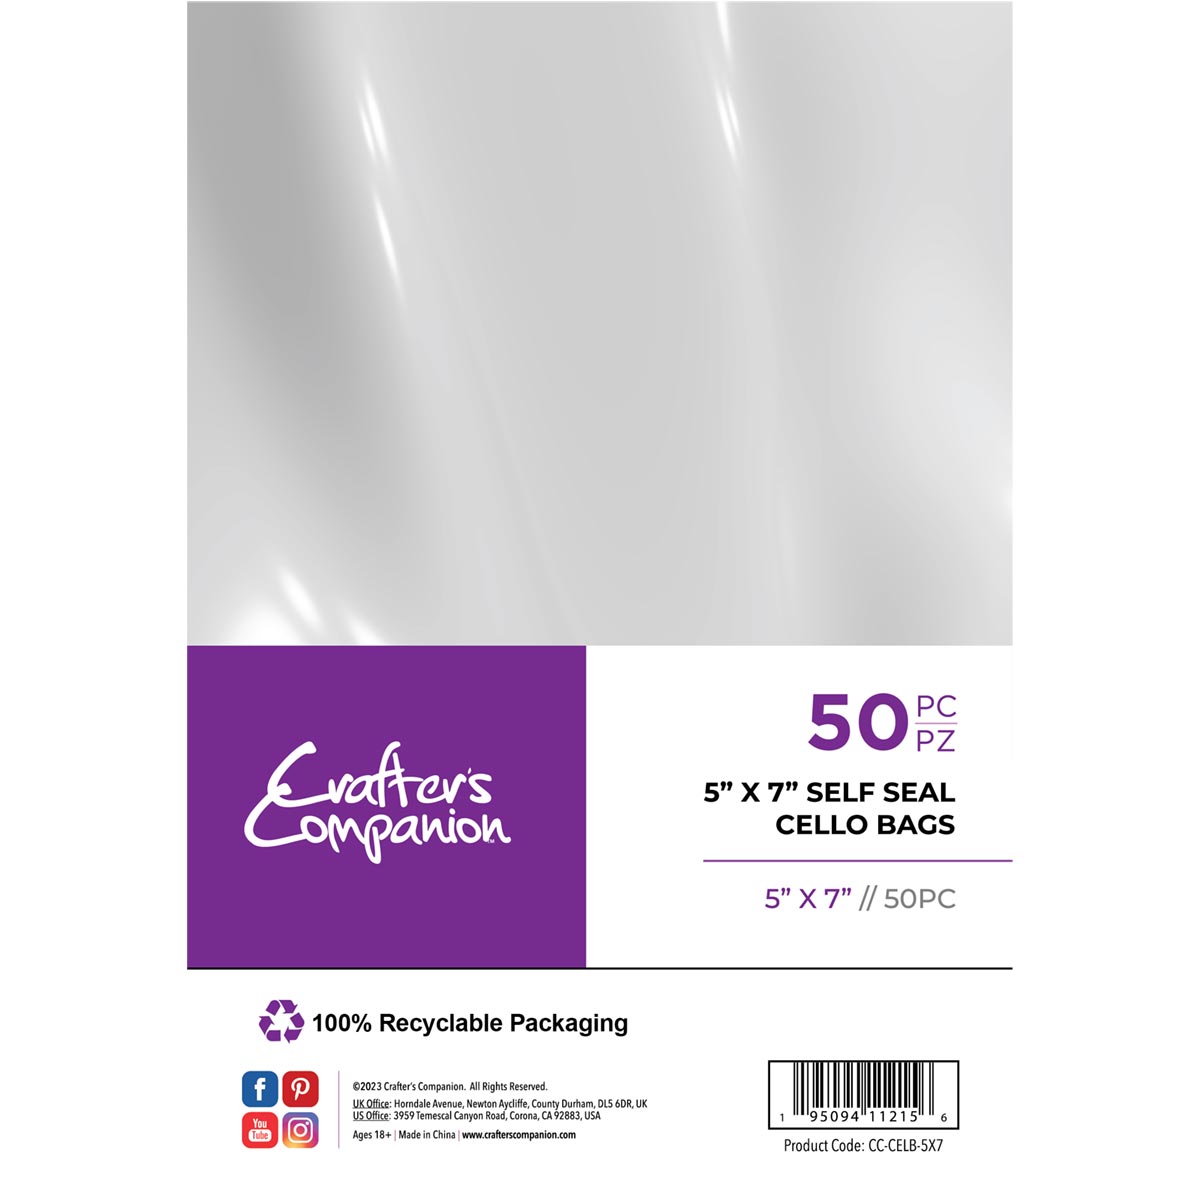 Crafter's Companion - Borse per card di cellophane auto -sigillo - 5 "x 7" 50 pacco